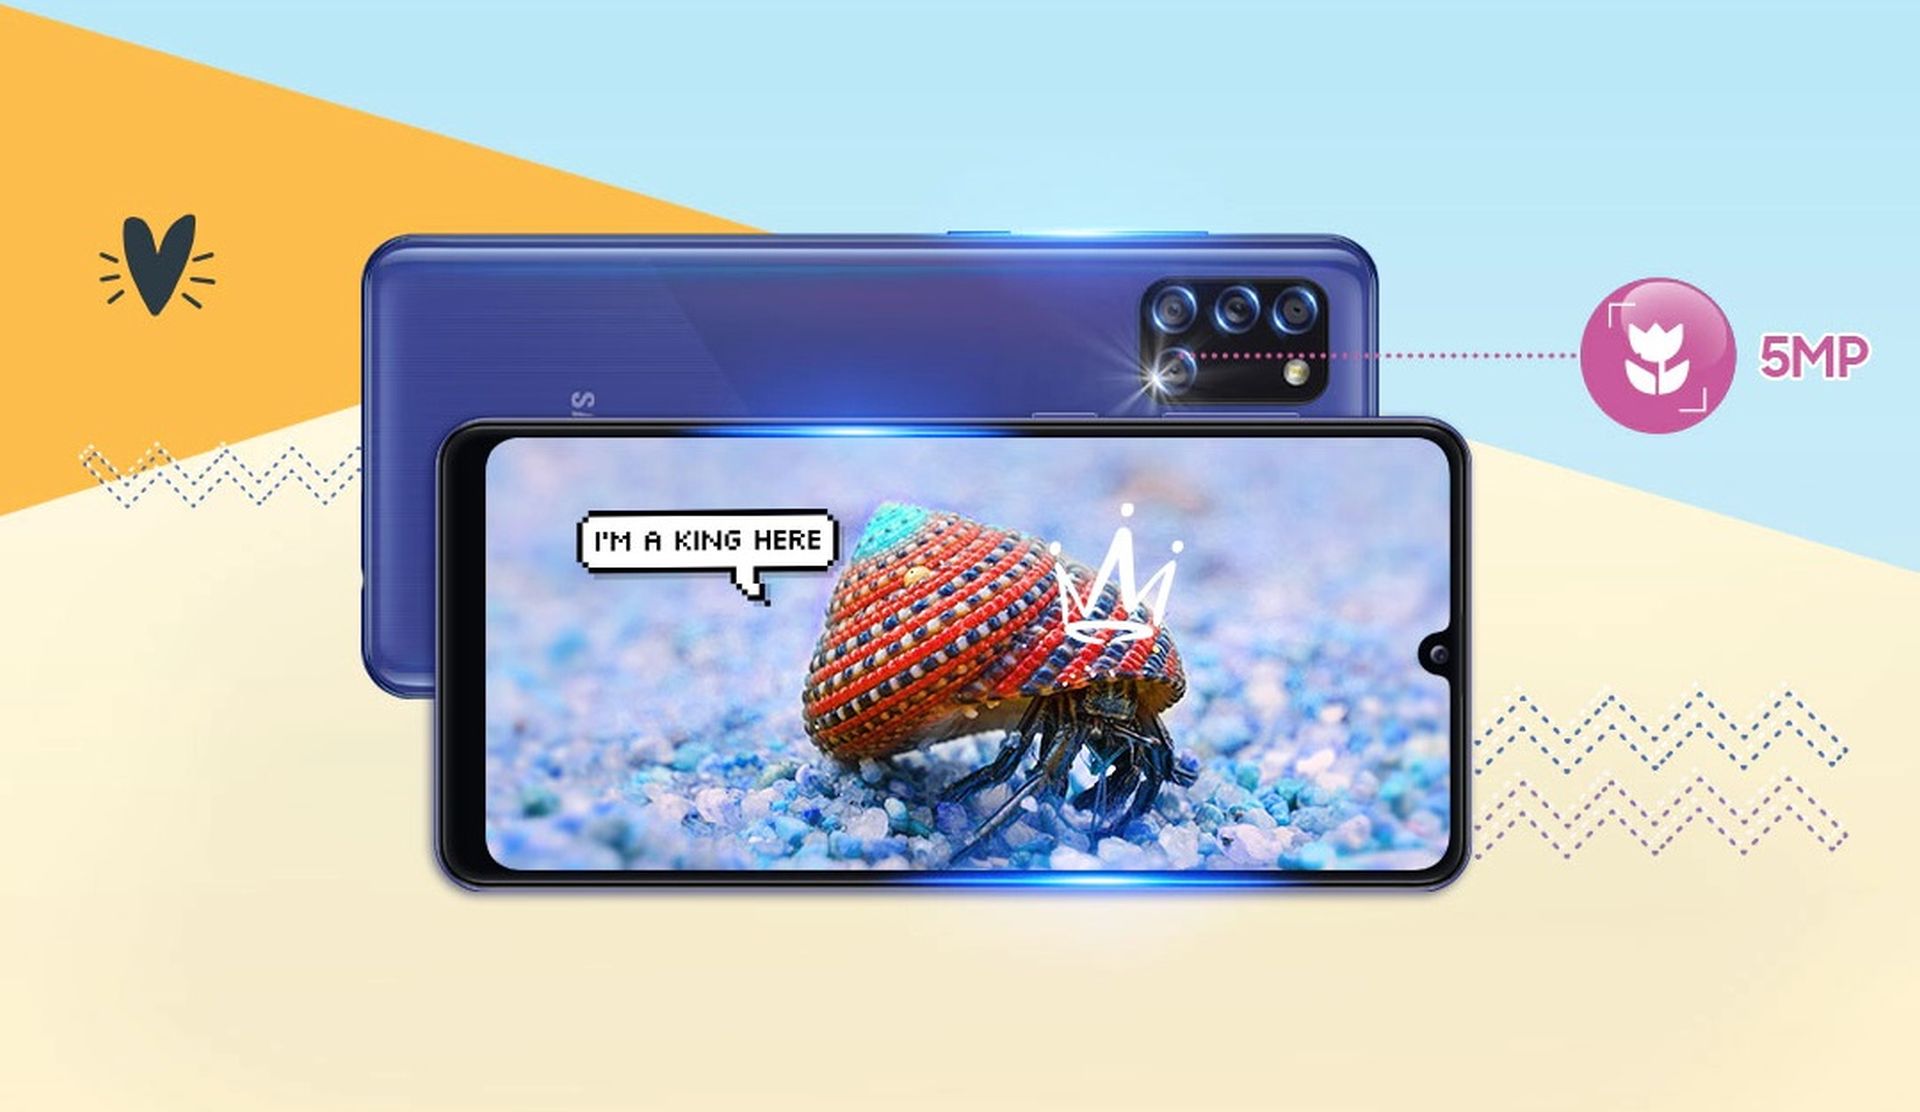 Smartphone dưới 5 triệu: Đối với những người có nhu cầu sử dụng smartphone giá rẻ nhưng không muốn hy sinh hiệu năng và trải nghiệm người dùng, Samsung A31 là một lựa chọn tuyệt vời. Với mức giá hấp dẫn dưới 5 triệu đồng, máy sở hữu màn hình Super AMOLED 6.4 inch, RAM 6GB, bộ nhớ trong 128GB, camera chính 48MP và pin 5000mAh. Vì vậy, không phải ngẫu nhiên mà Samsung A31 trở thành một trong những smartphone bán chạy nhất trong tầm giá này.